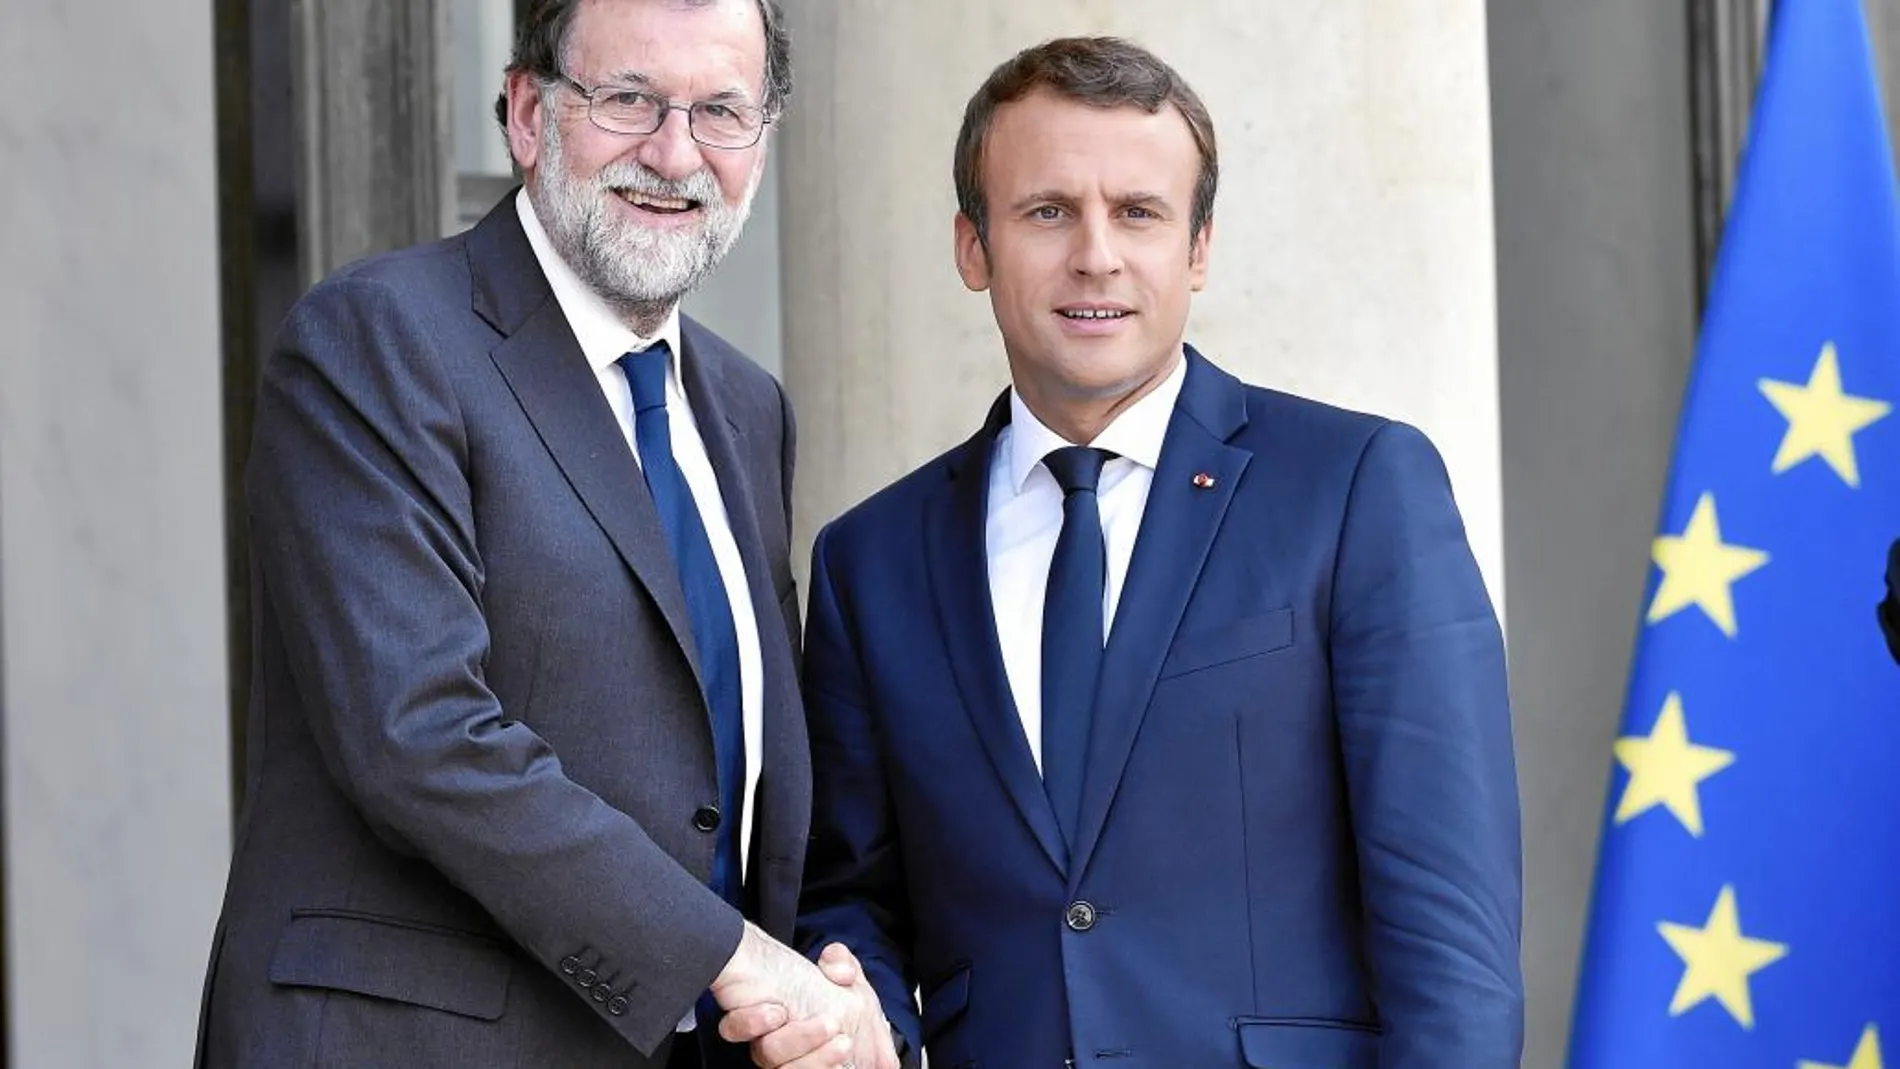 El presidente de Francia, Emmanuel Macron, recibe al presidente de España, Mariano Rajoy, en las puertas del Elíseo, ayer, en París